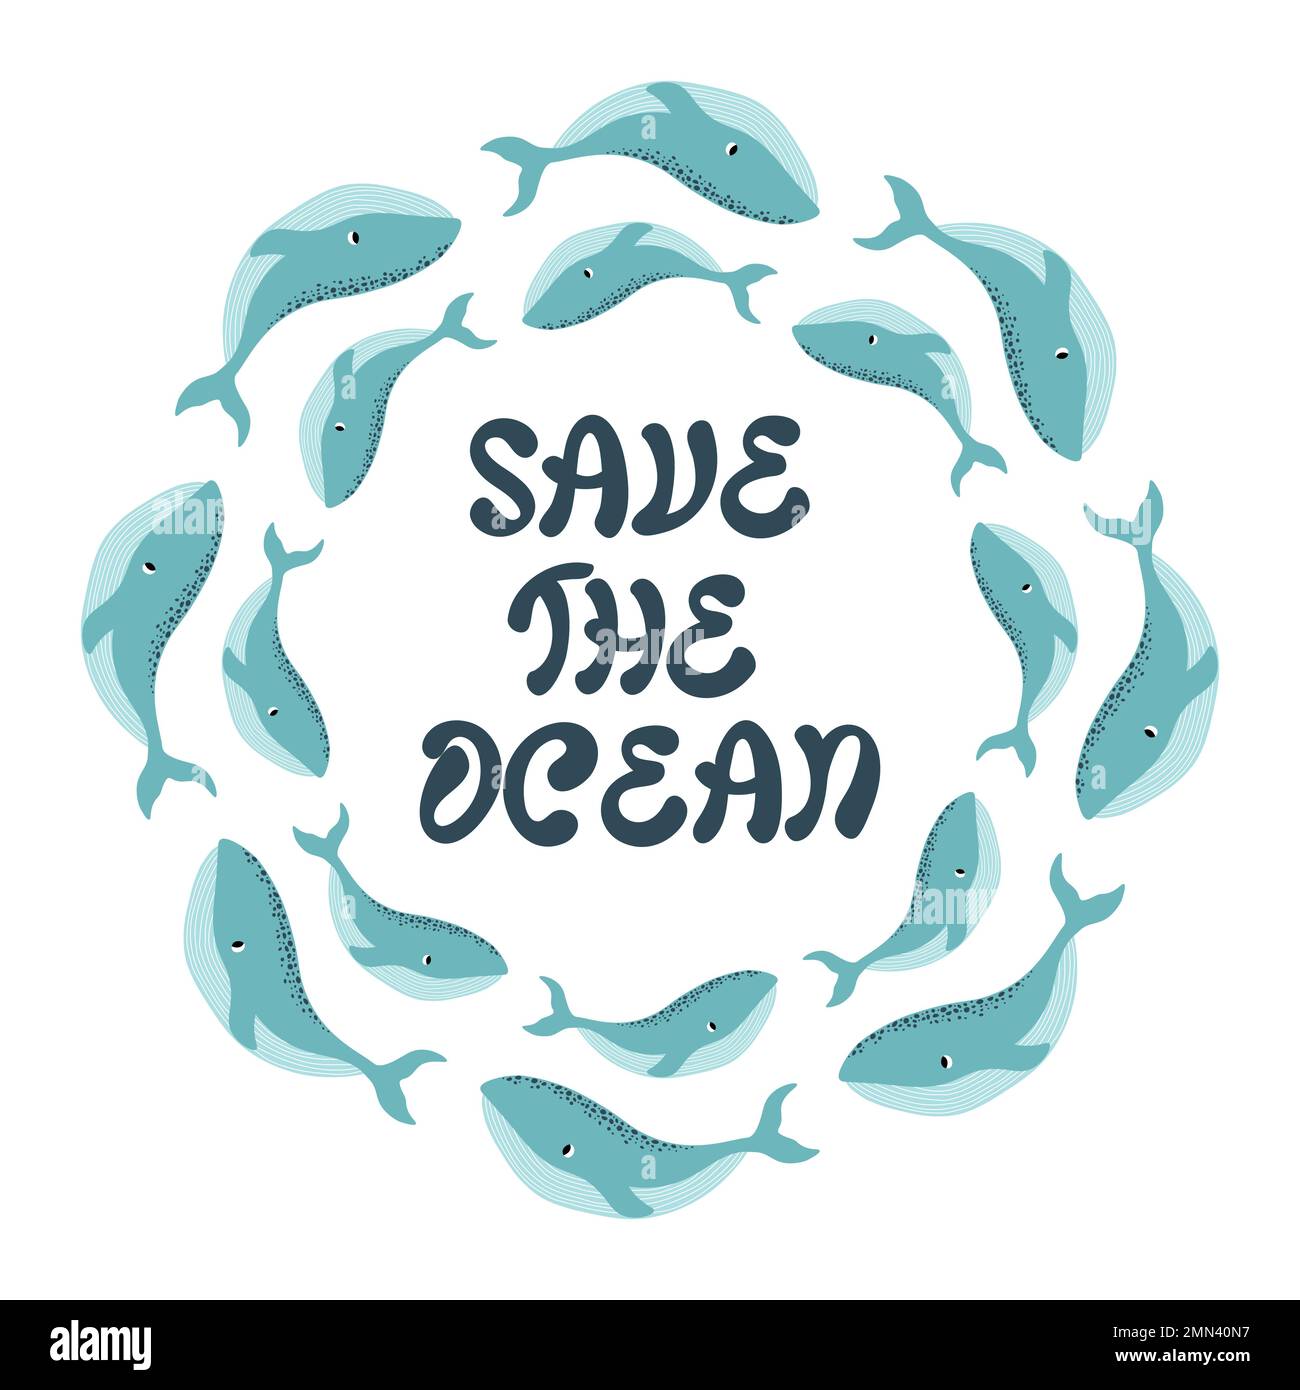 Vektor-Ozean-Illustration mit Wal. Save the Ocean - Moderne Schriftzeichen. Unterwassertiere. Ökologisches Design für Banner, Flyer, Postkarten, Website Stock Vektor